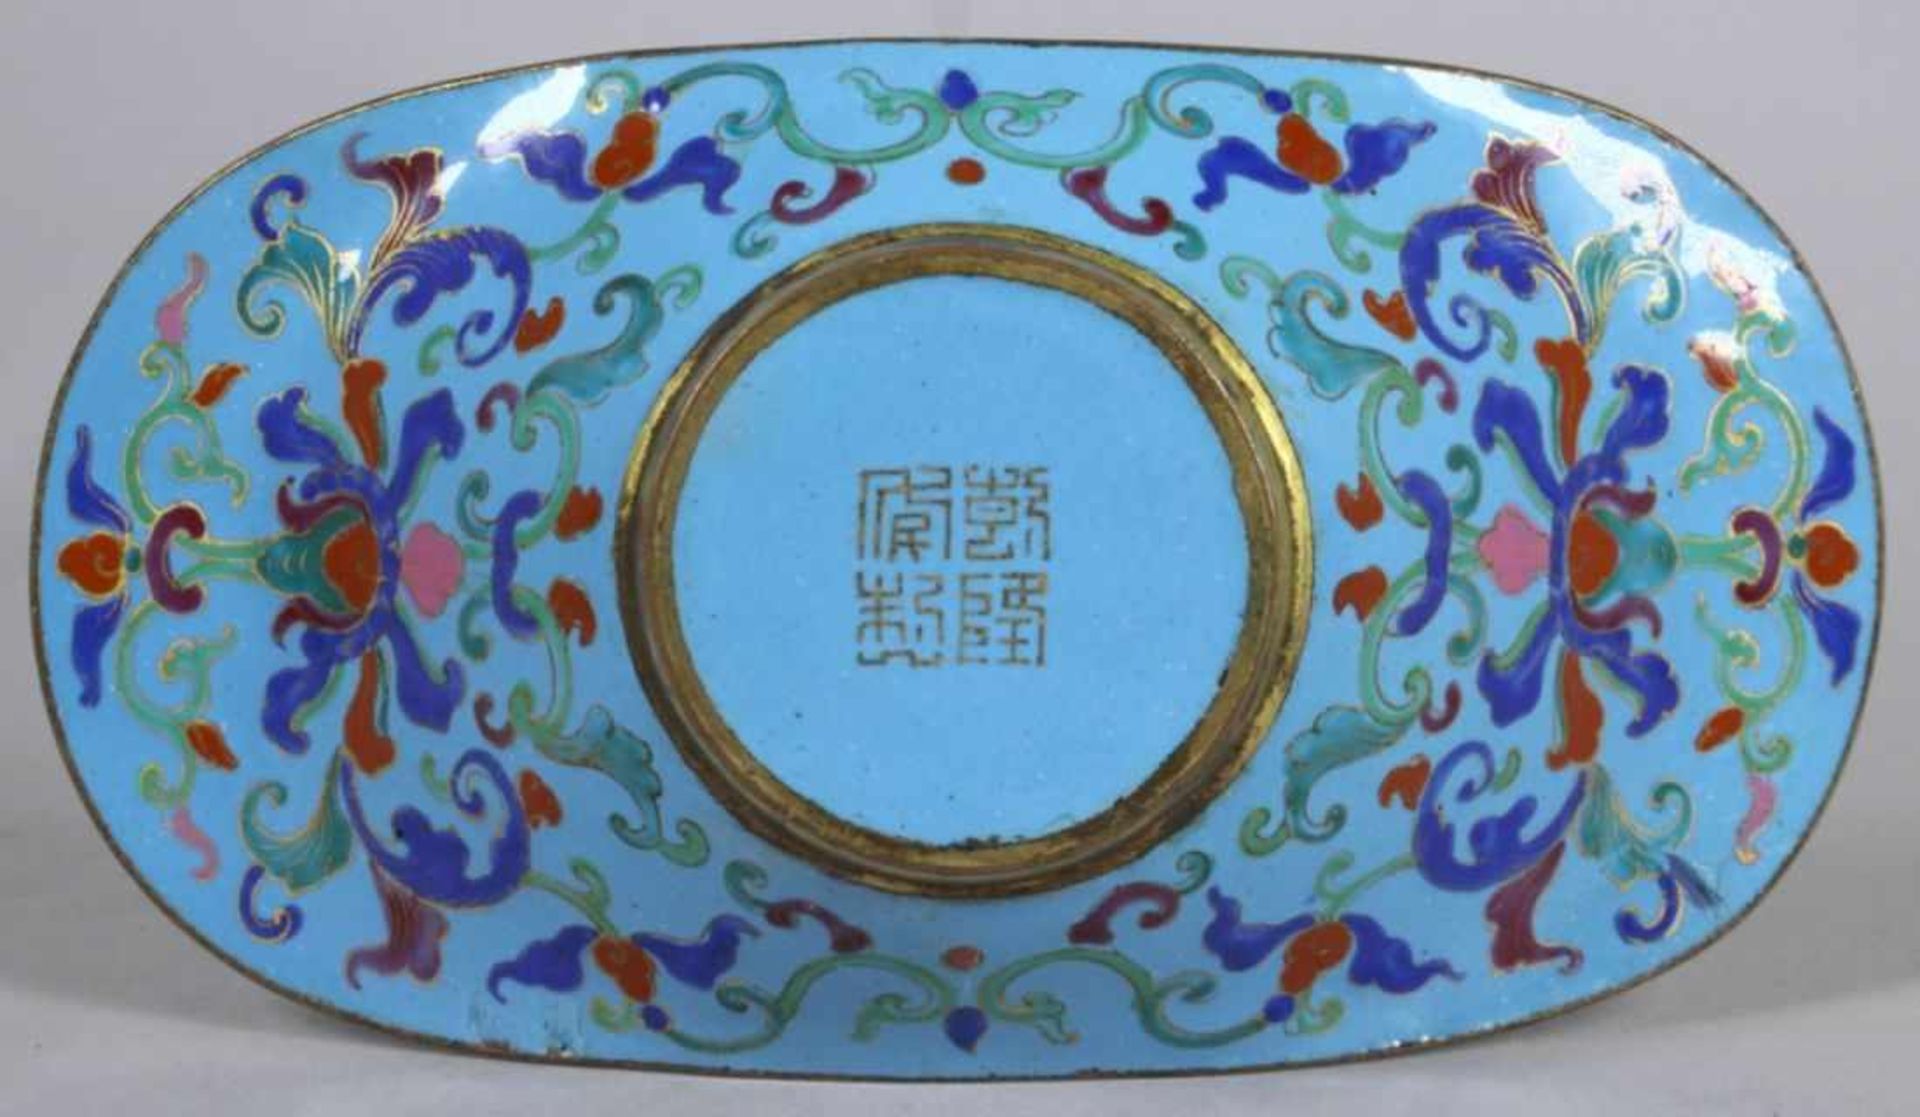 Kantonemail-Zierschälchen, China, 18. Jh., runder, vertiefter Spiegel, oval< - Bild 3 aus 3